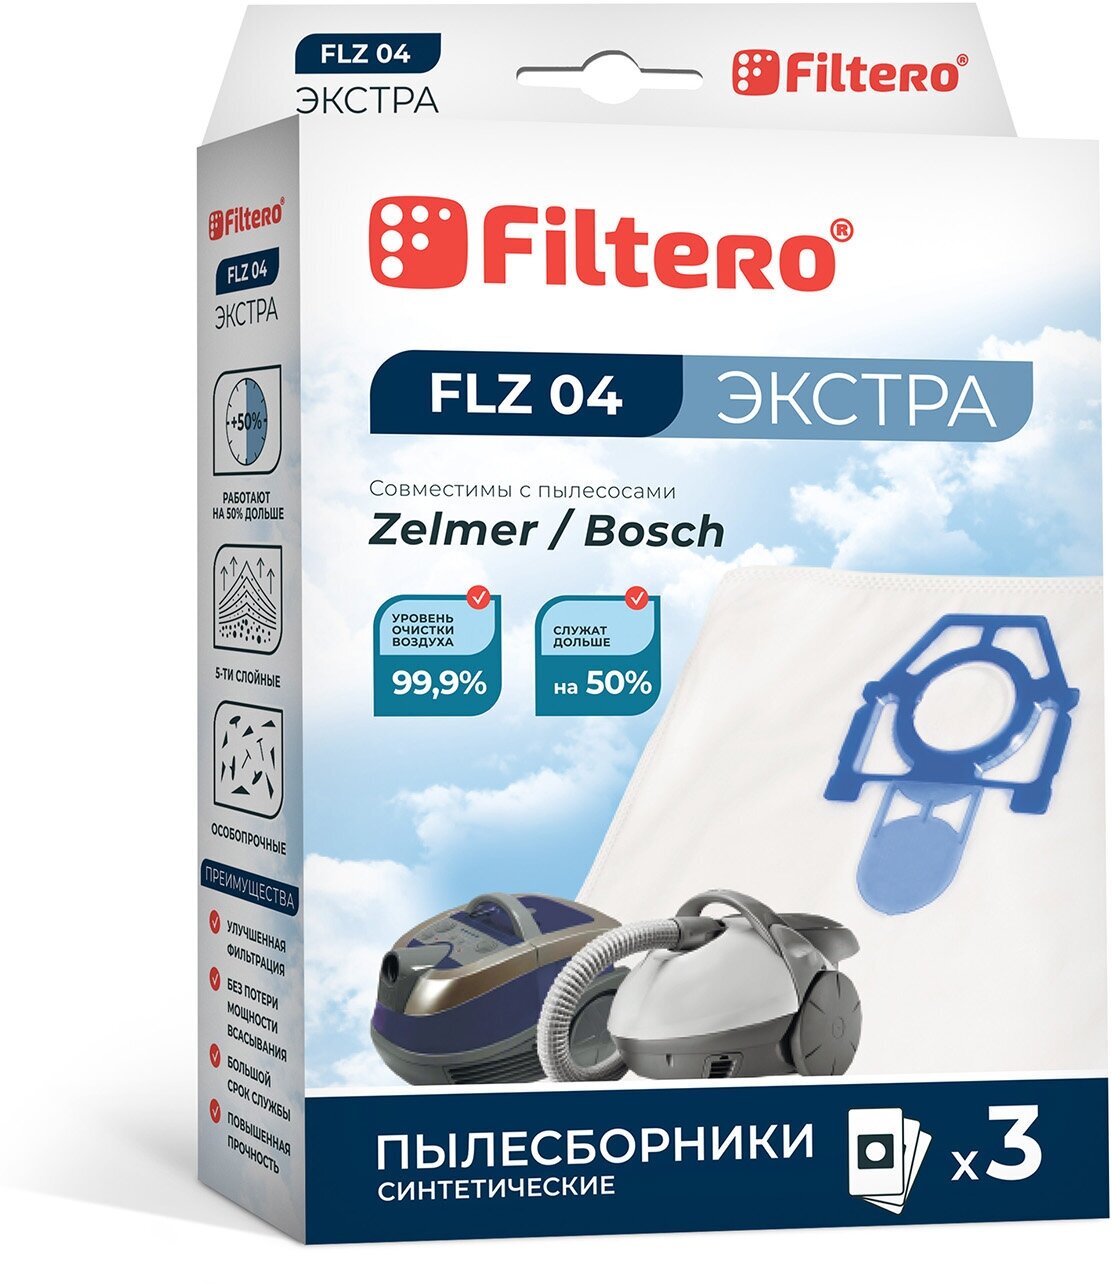 мешок-пылесборник Filtero FLZ 04 Экстра - фото №8